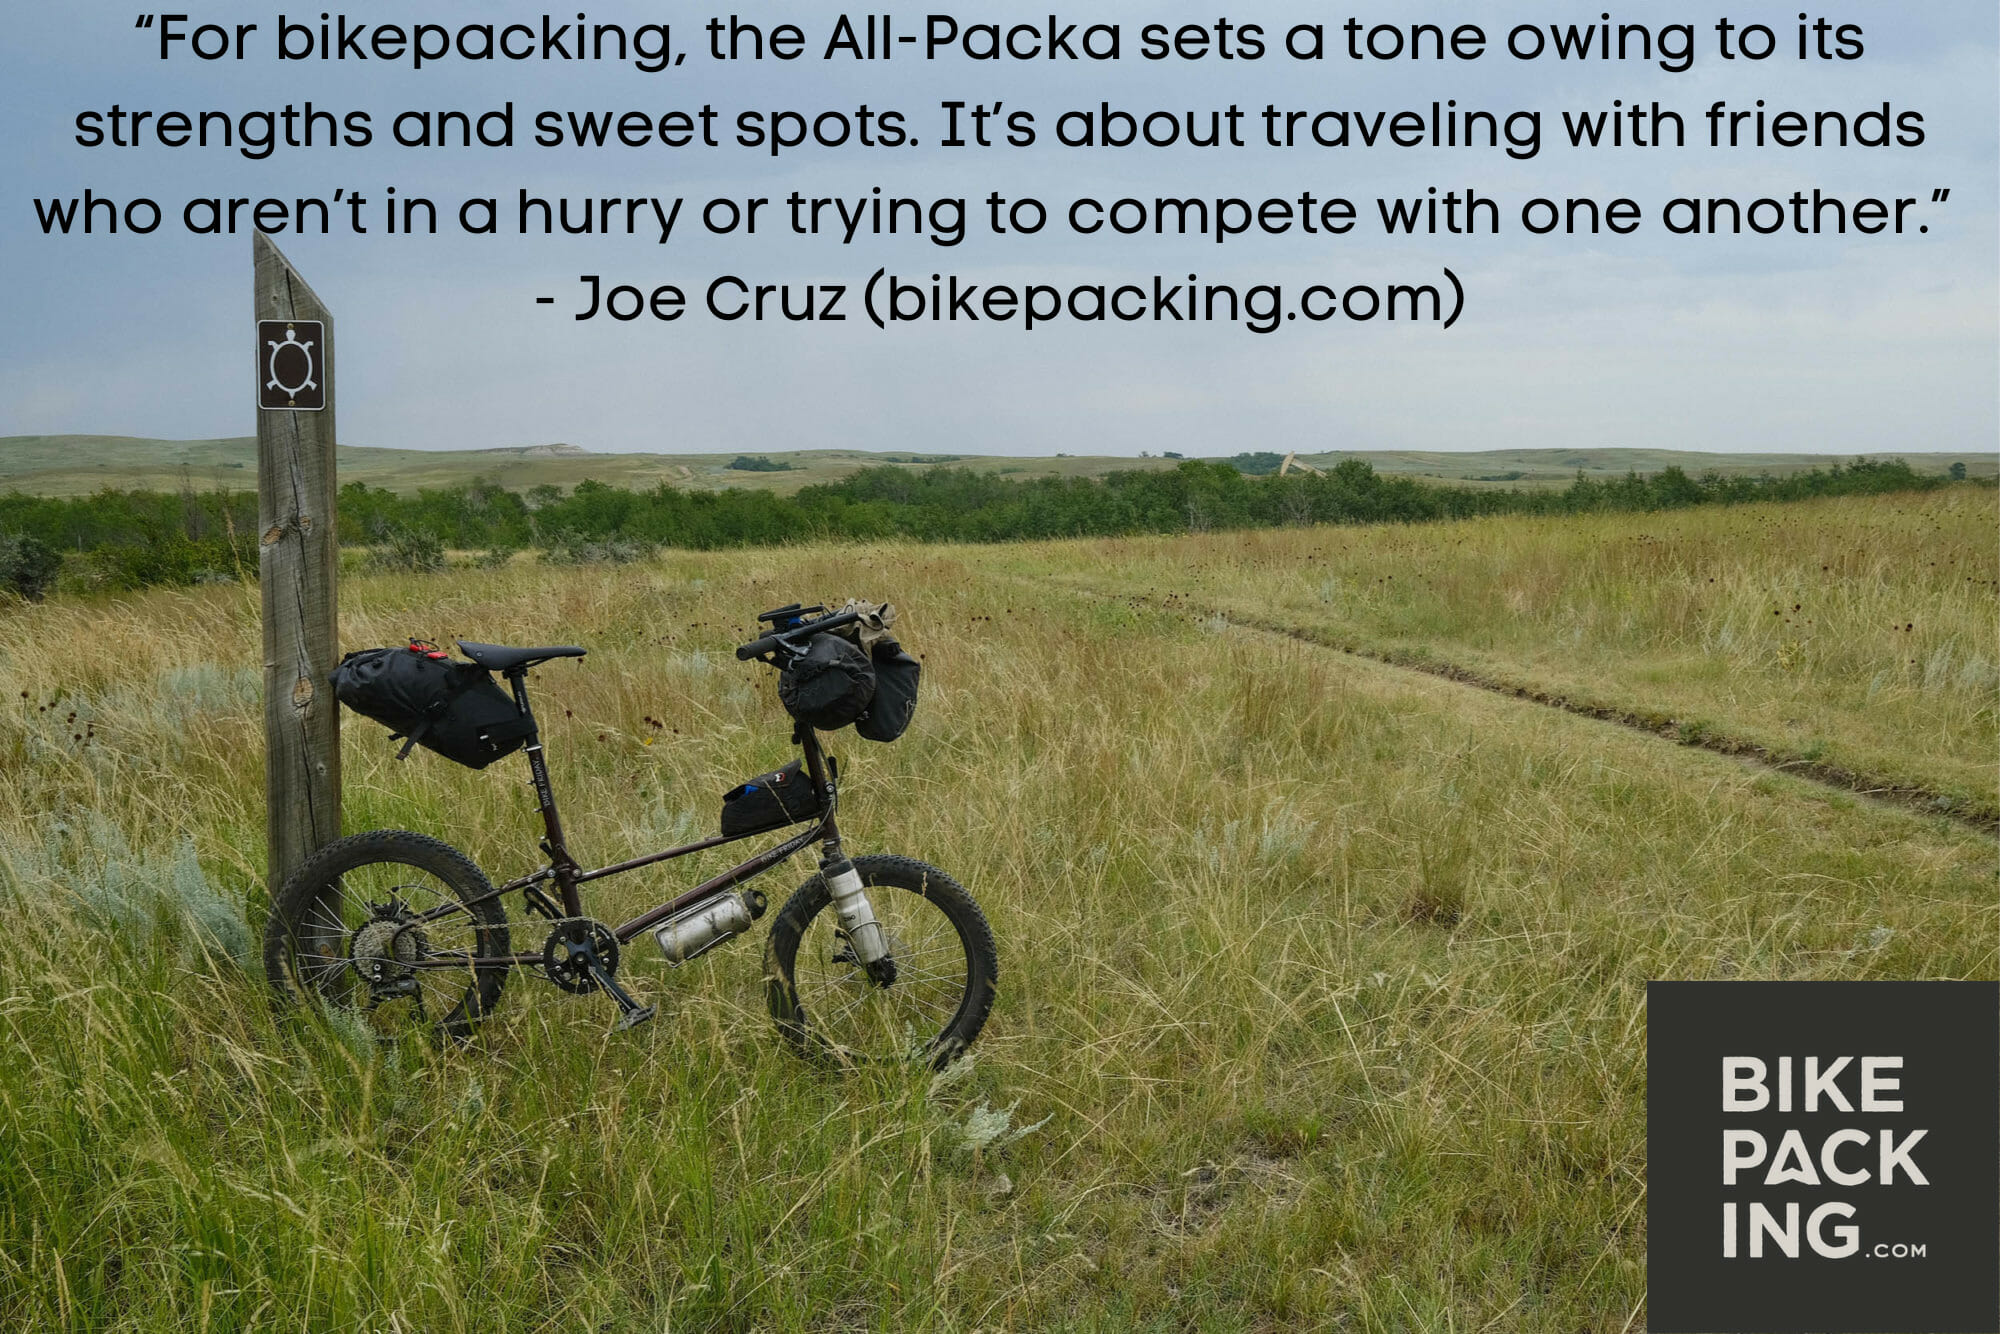 All-Packa bikepacking.com